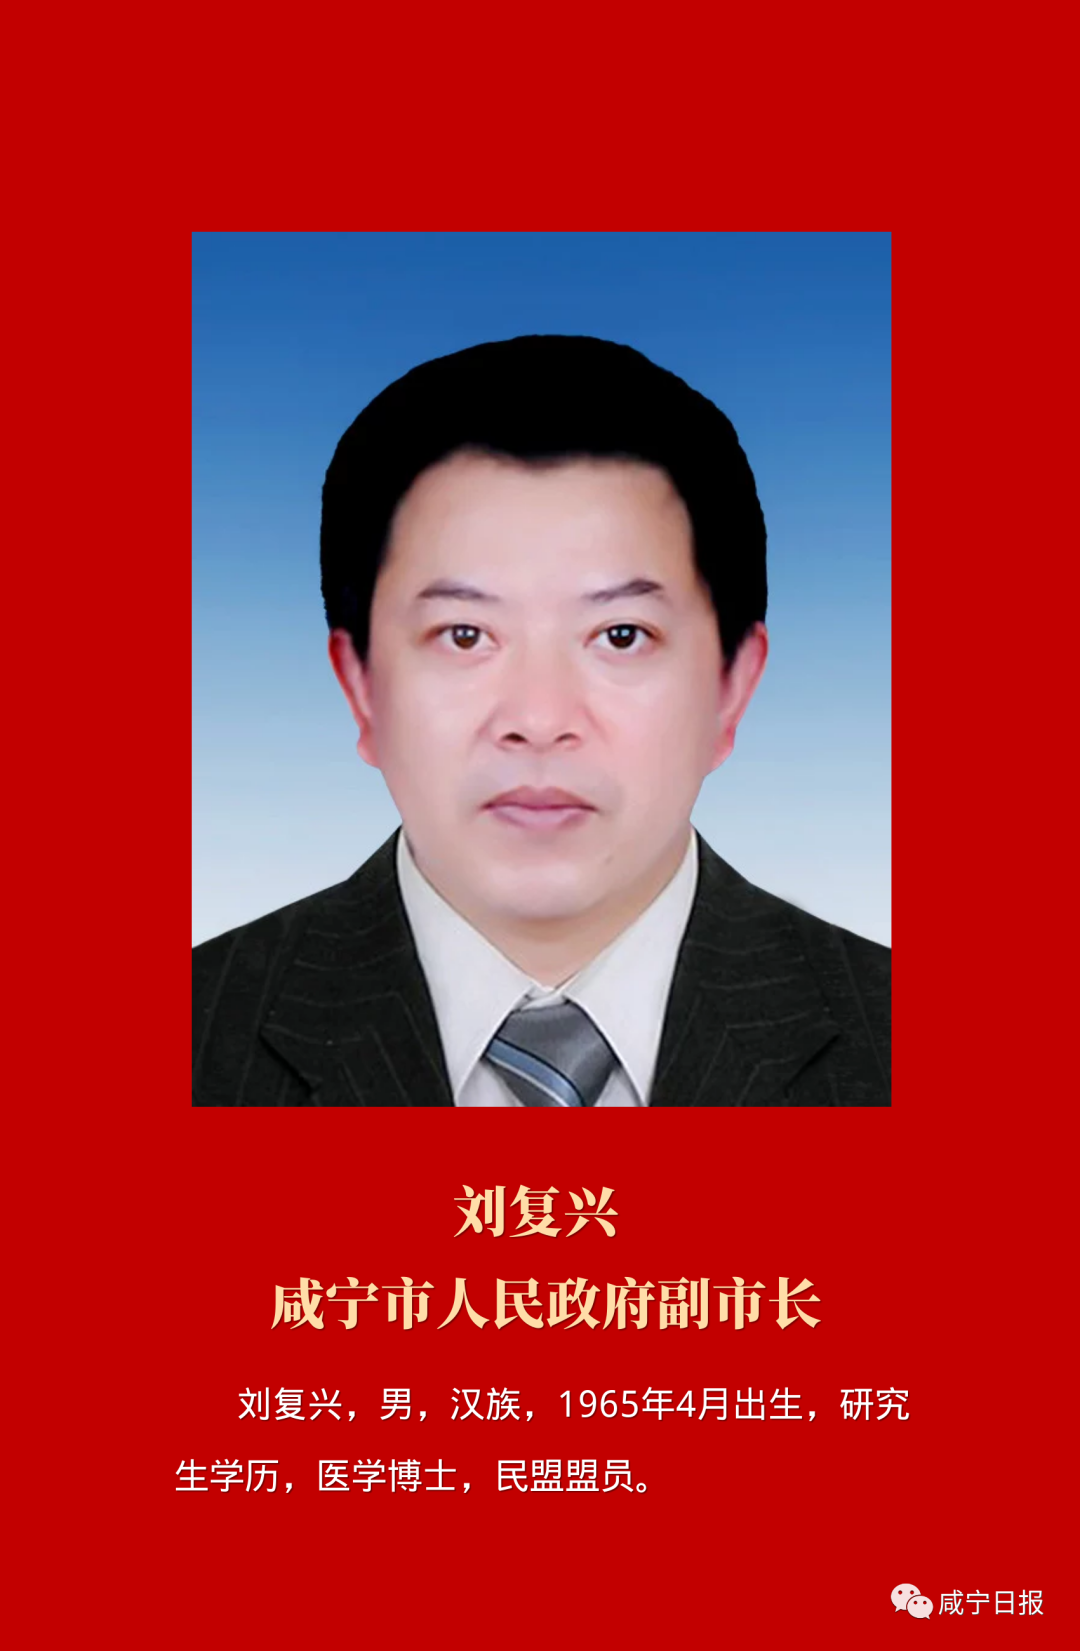 咸宁市委副书记杨军图片